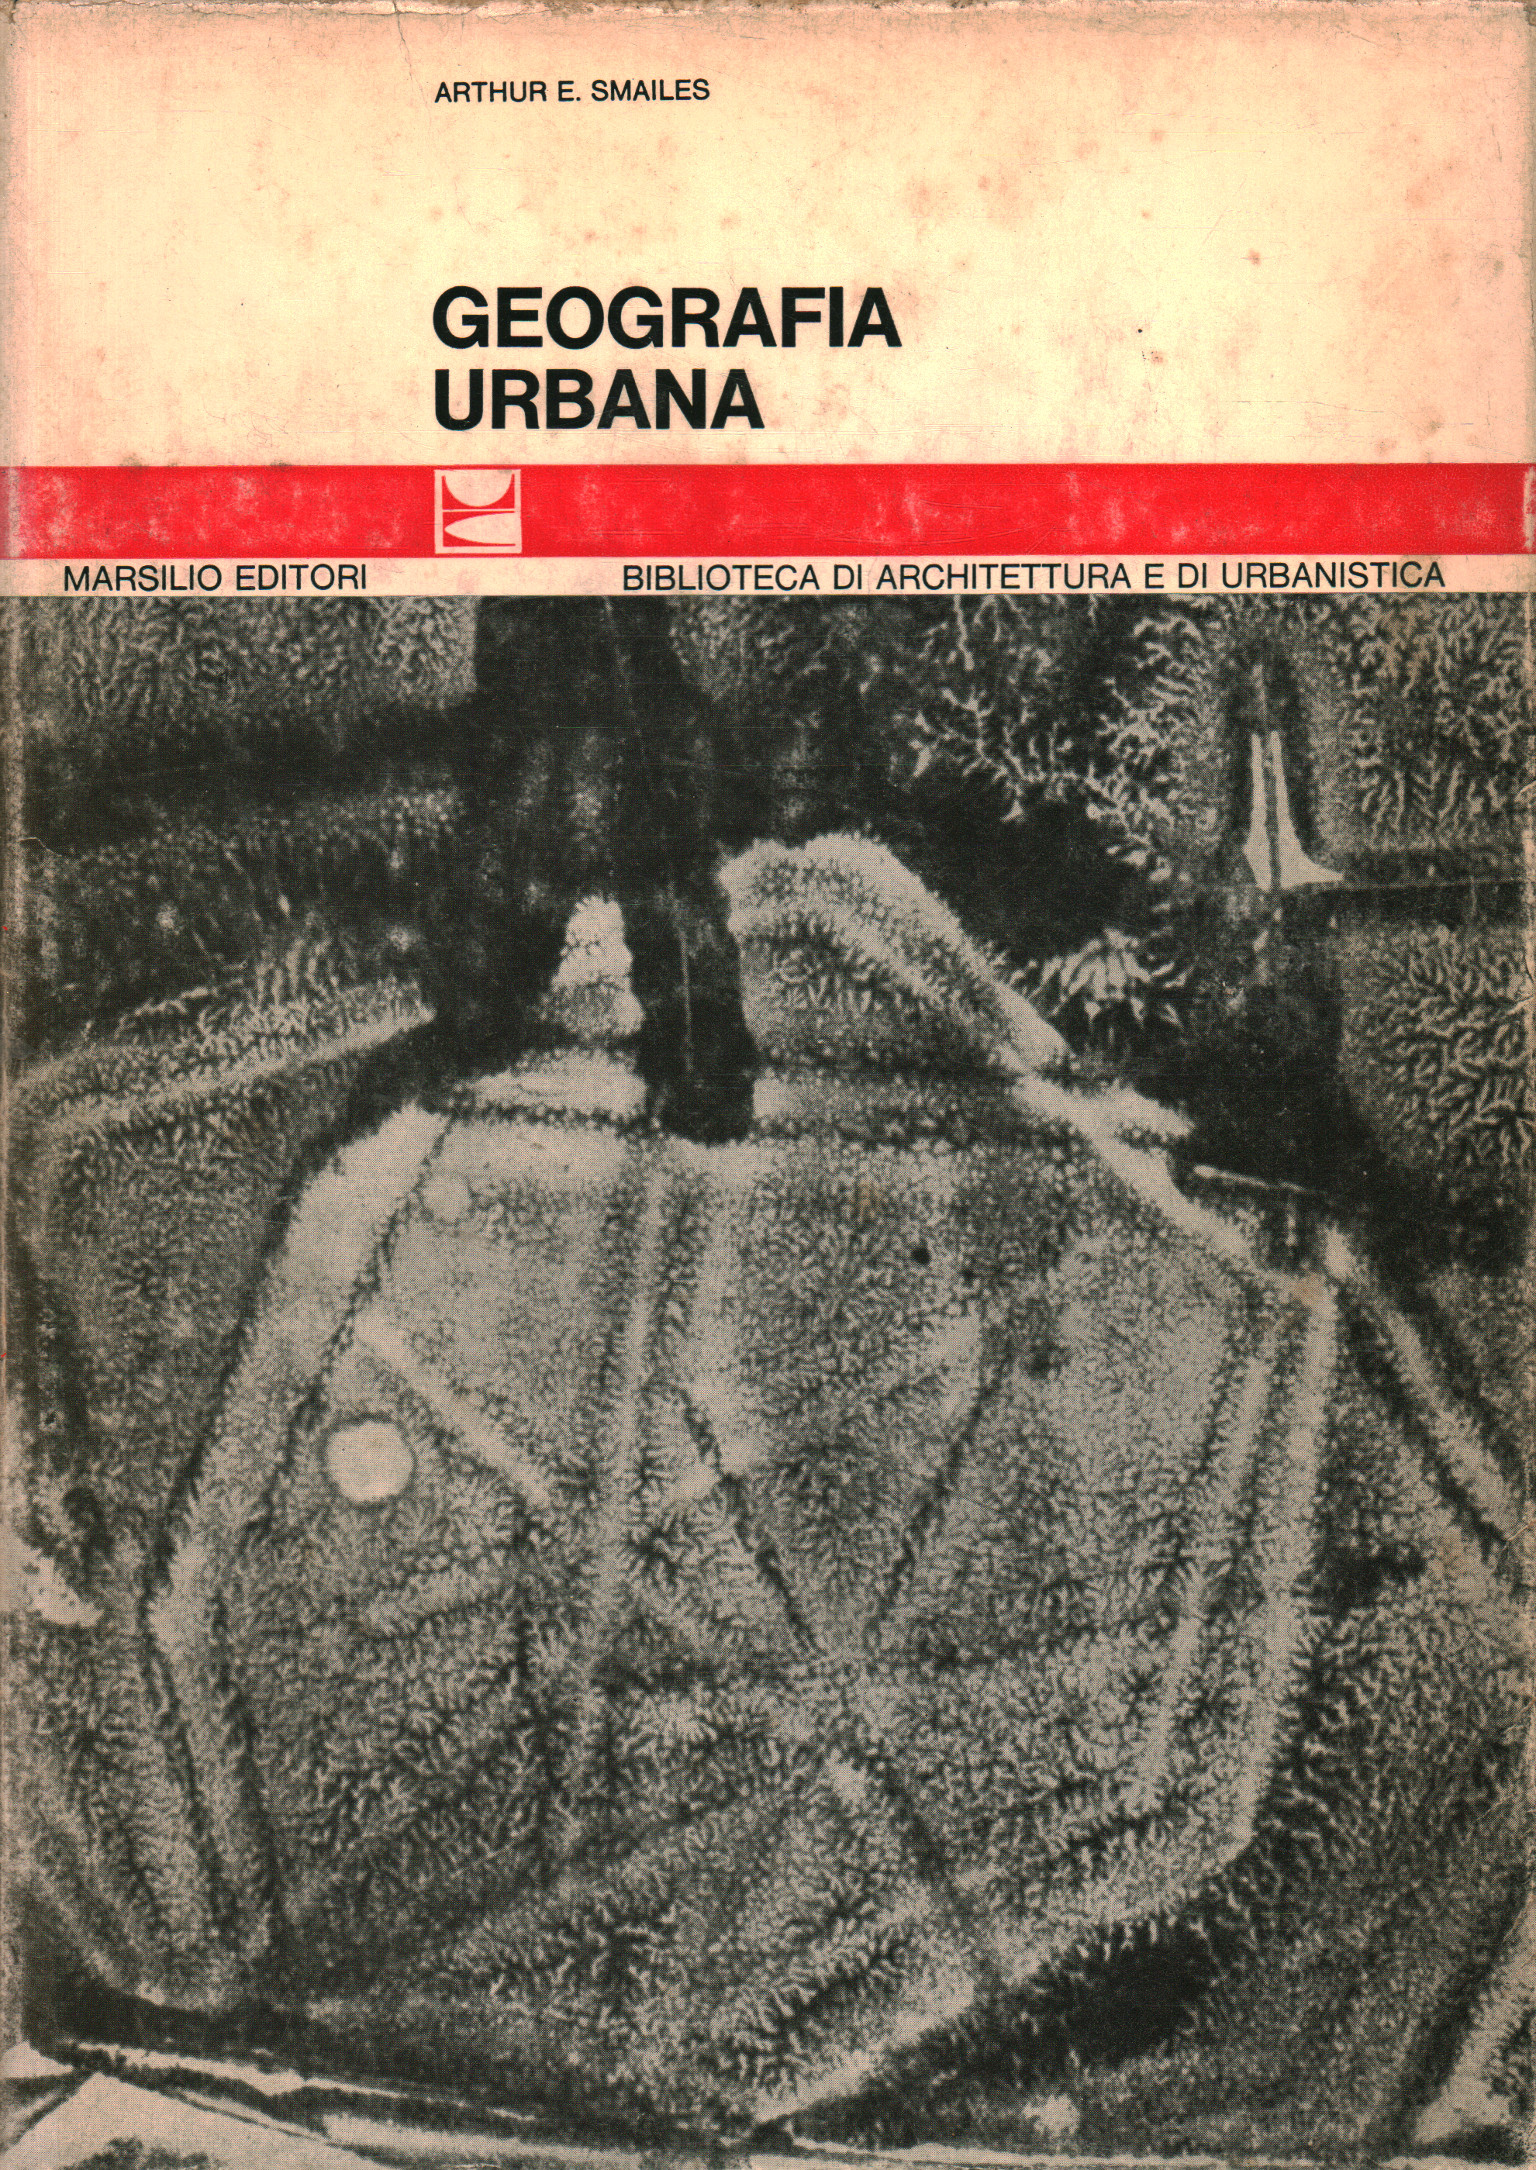 Geografia urbana, Arthur E.Smailes